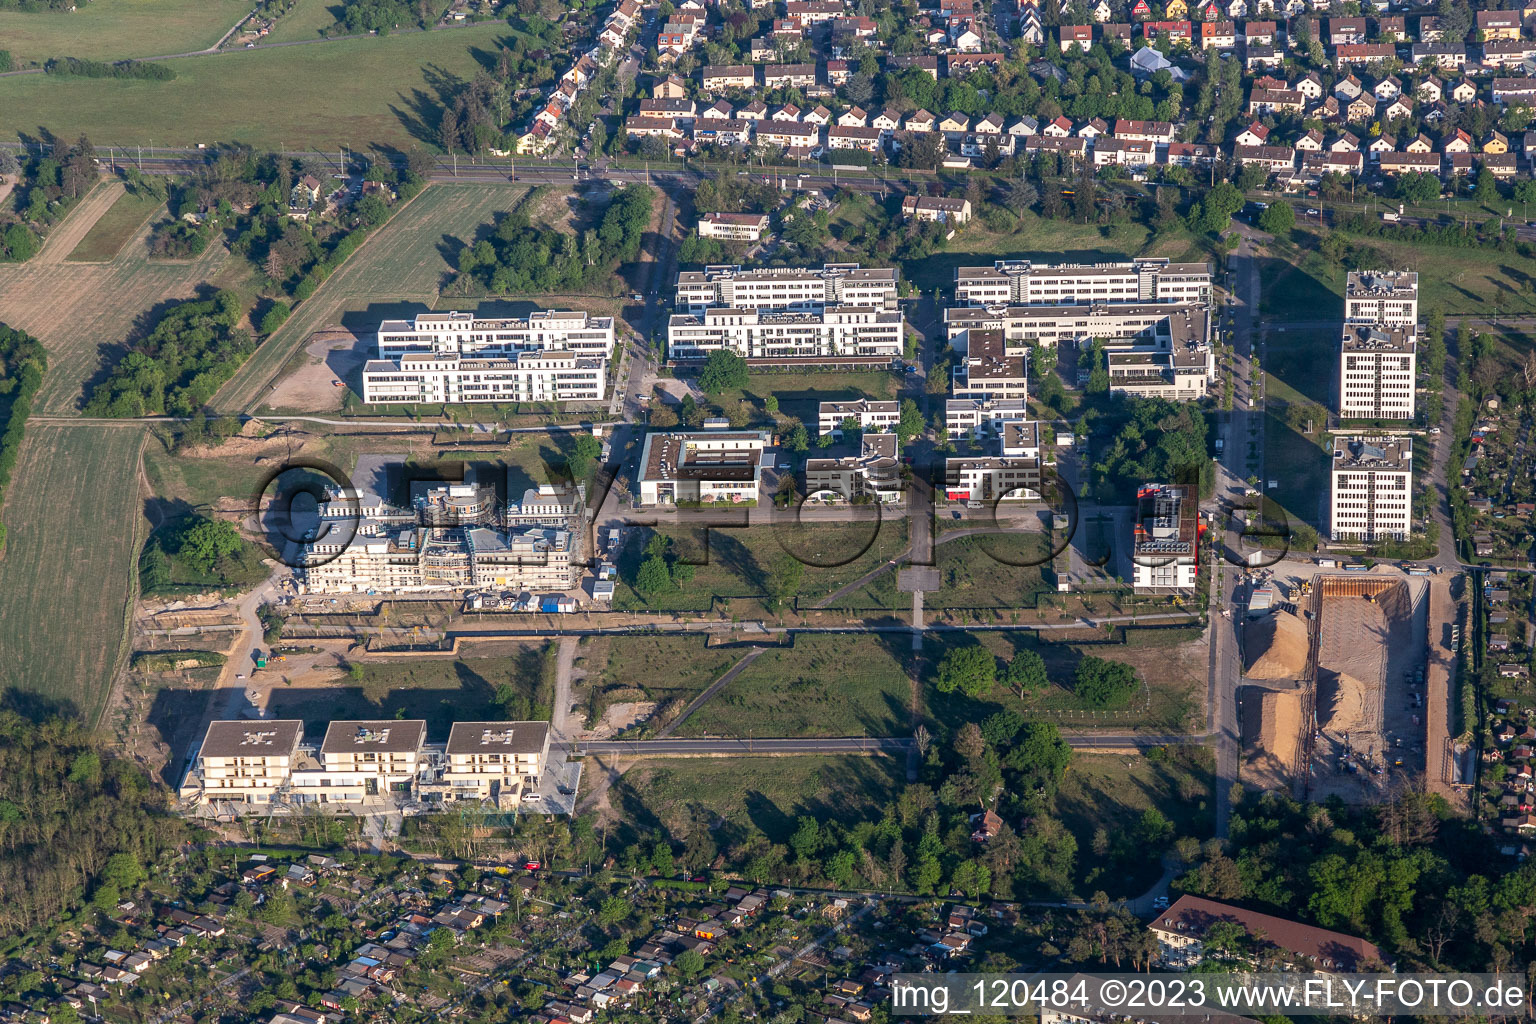 Parc technologique à le quartier Rintheim in Karlsruhe dans le département Bade-Wurtemberg, Allemagne du point de vue du drone